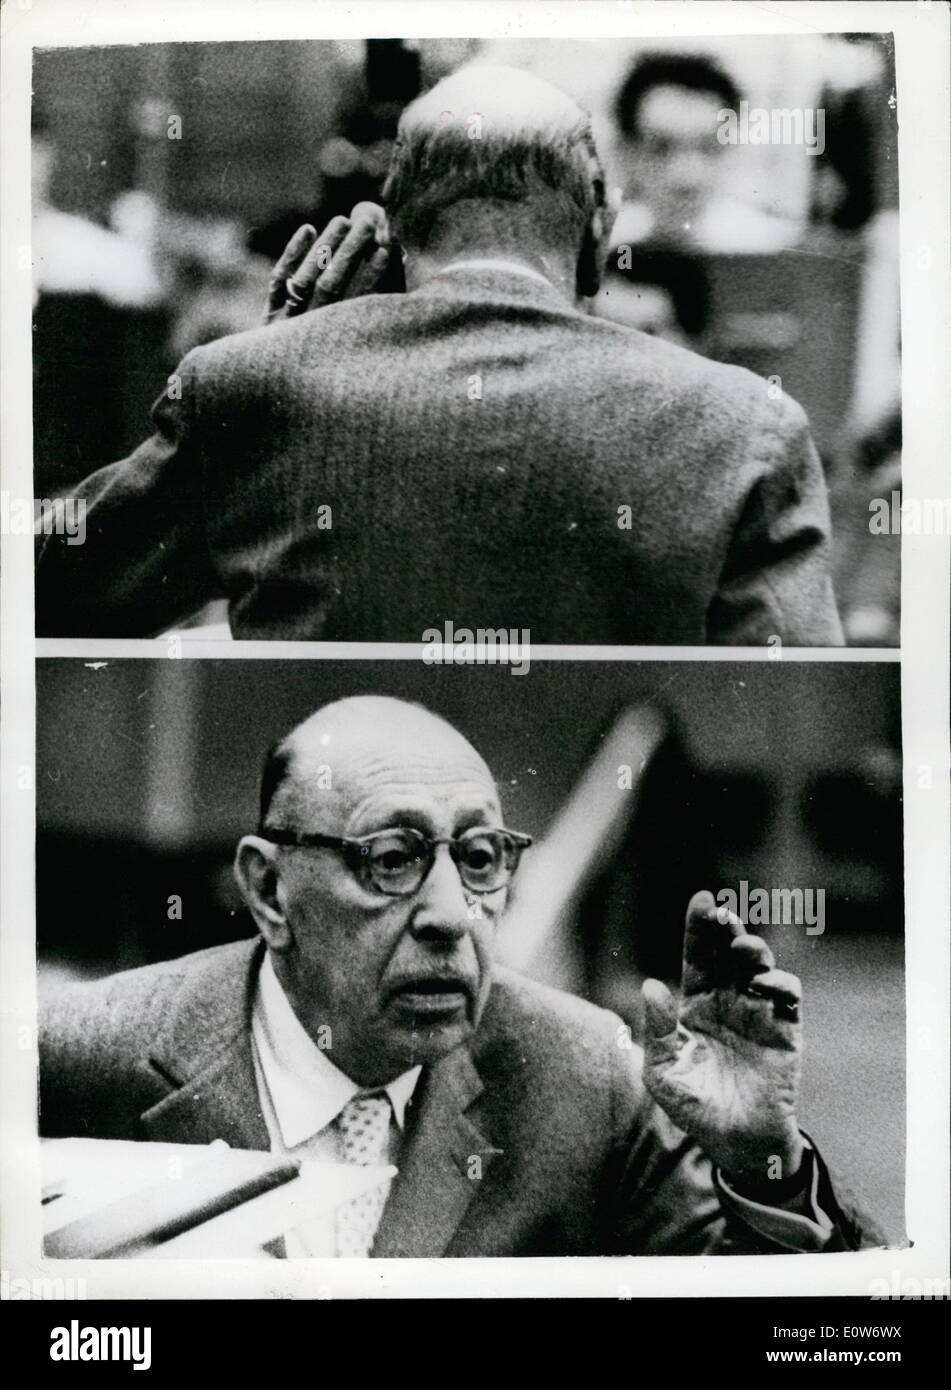 10 octobre 1961 - l'homme à l'oreille musicale - Igor Stravinsky répète la b.b.c. symphony Orchestra : Le plus grand compositeur vivant, 79 ans, Igor Stravinski, l'homme qui en 50 ans a entendu sa musique rejetée et condamnée, accepté et acclamé, a été occupé hier à l'écoute critique à une répétition par la b.b.c. Symphony Orchestra. La salle des fêtes sera emballé avec des célébrités pour la maîtrise en concert le dimanche. photo montre deux études d'Igor Stravinsky (en haut) il prend sa part à sa voiture-ci-dessous et à l'écoute de la B.B.C. Banque D'Images